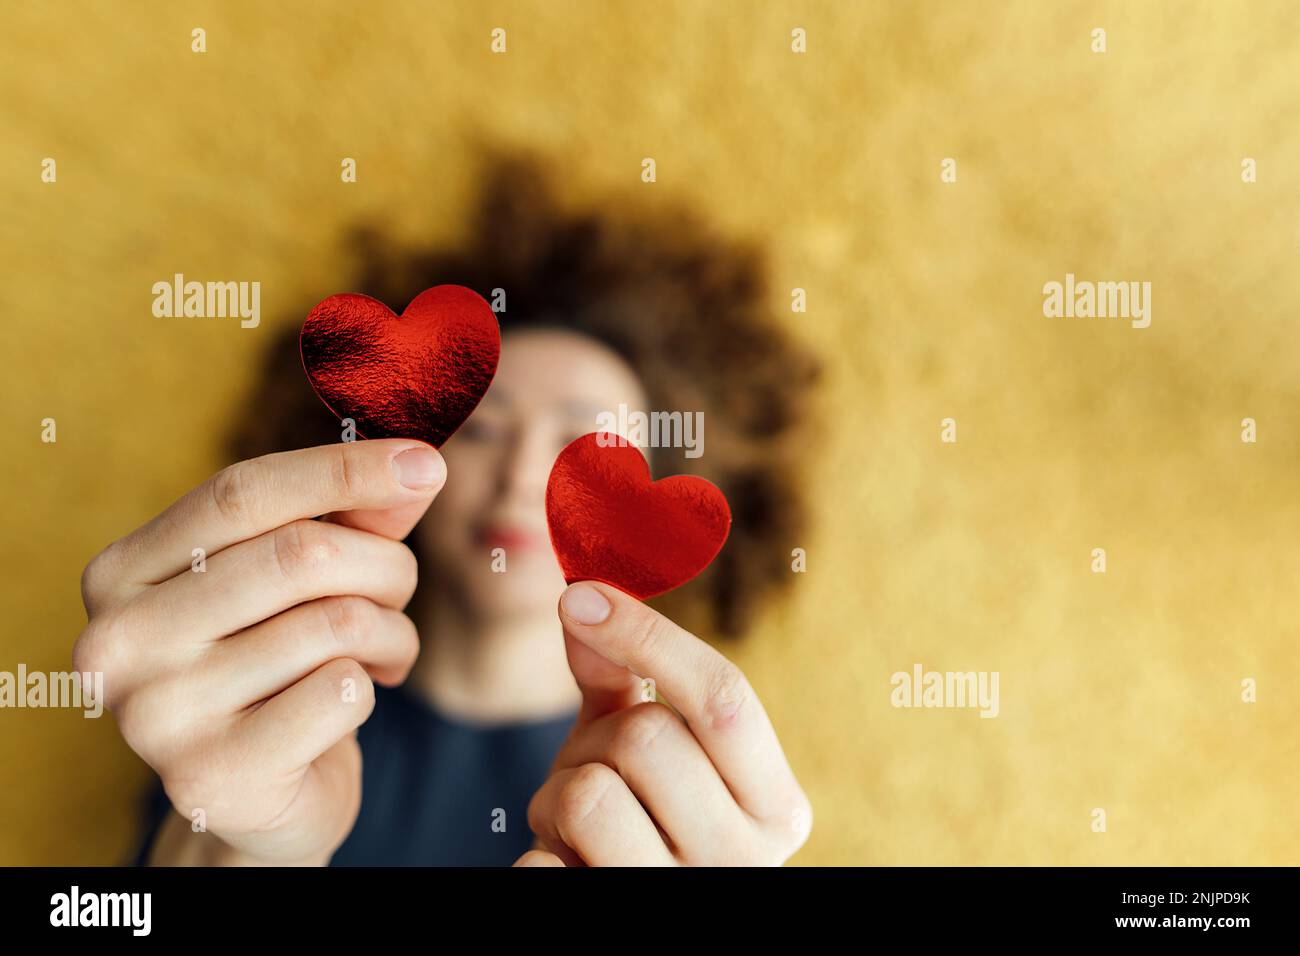 Dare la vita immagini e fotografie stock ad alta risoluzione - Alamy